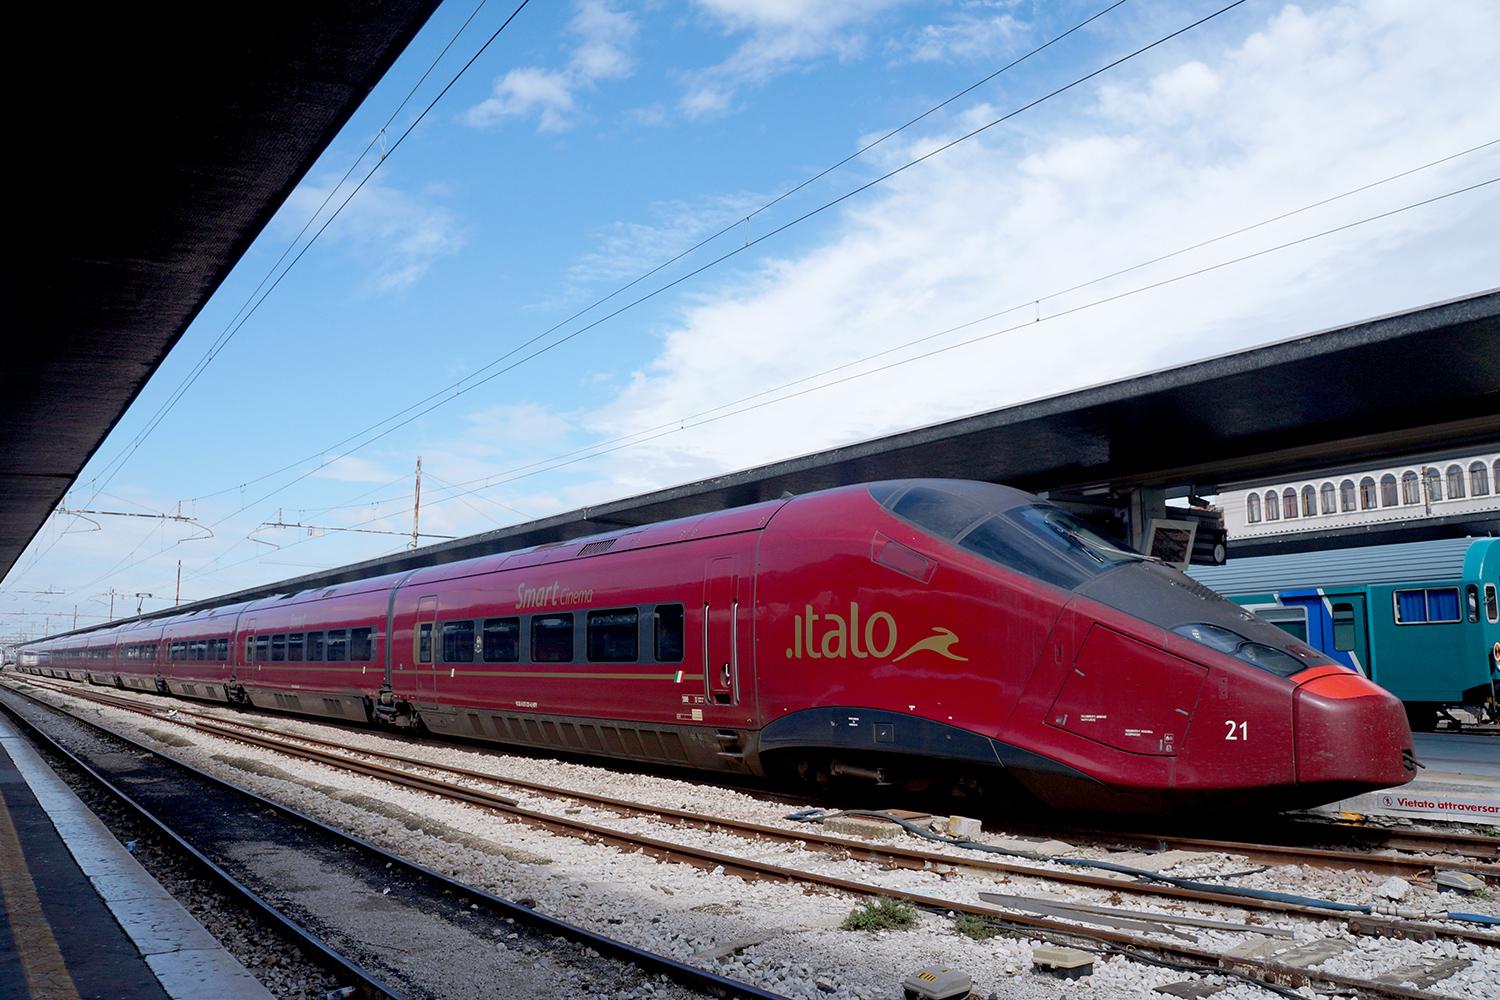 Italo High Speed Train, Italy